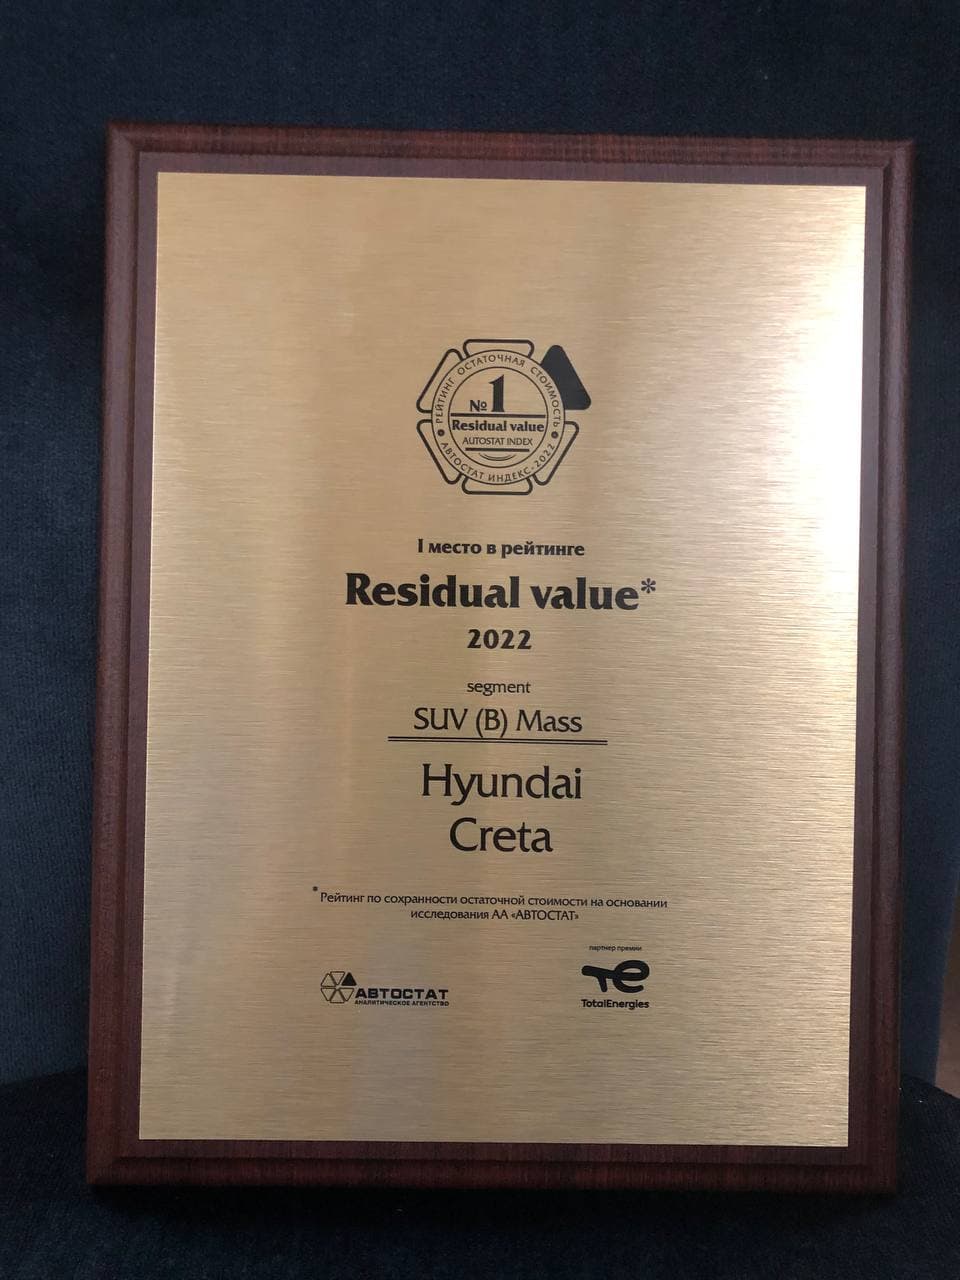 Hyundai Creta – лидер рейтинга сохранности остаточной стоимости «Residual Value – 2022» 